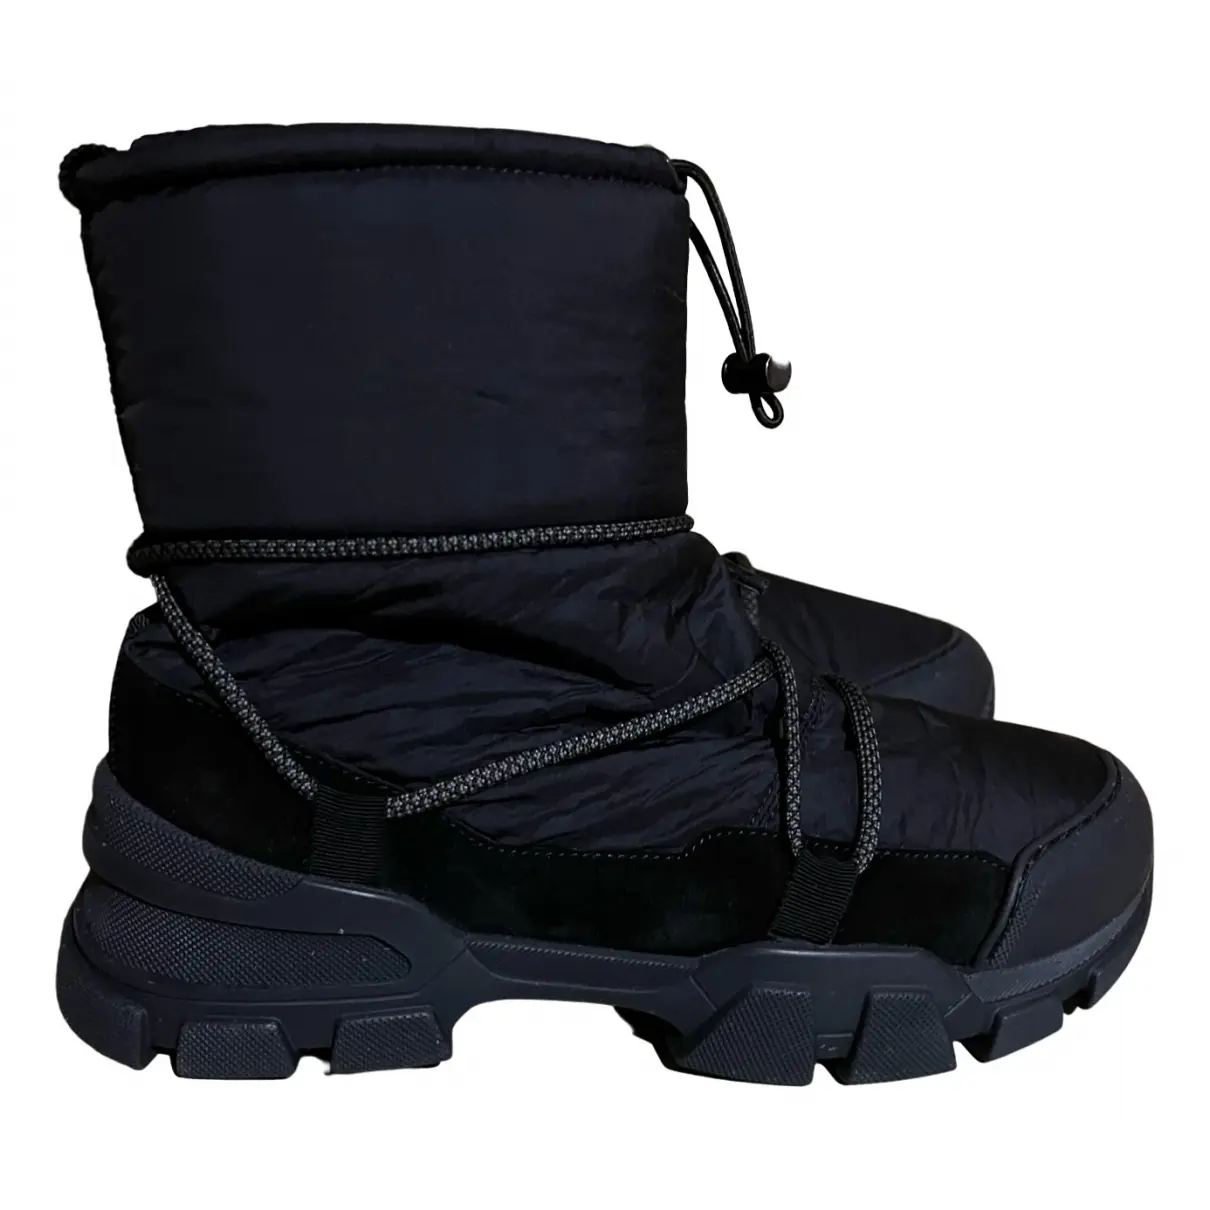 Snow boots Max Mara